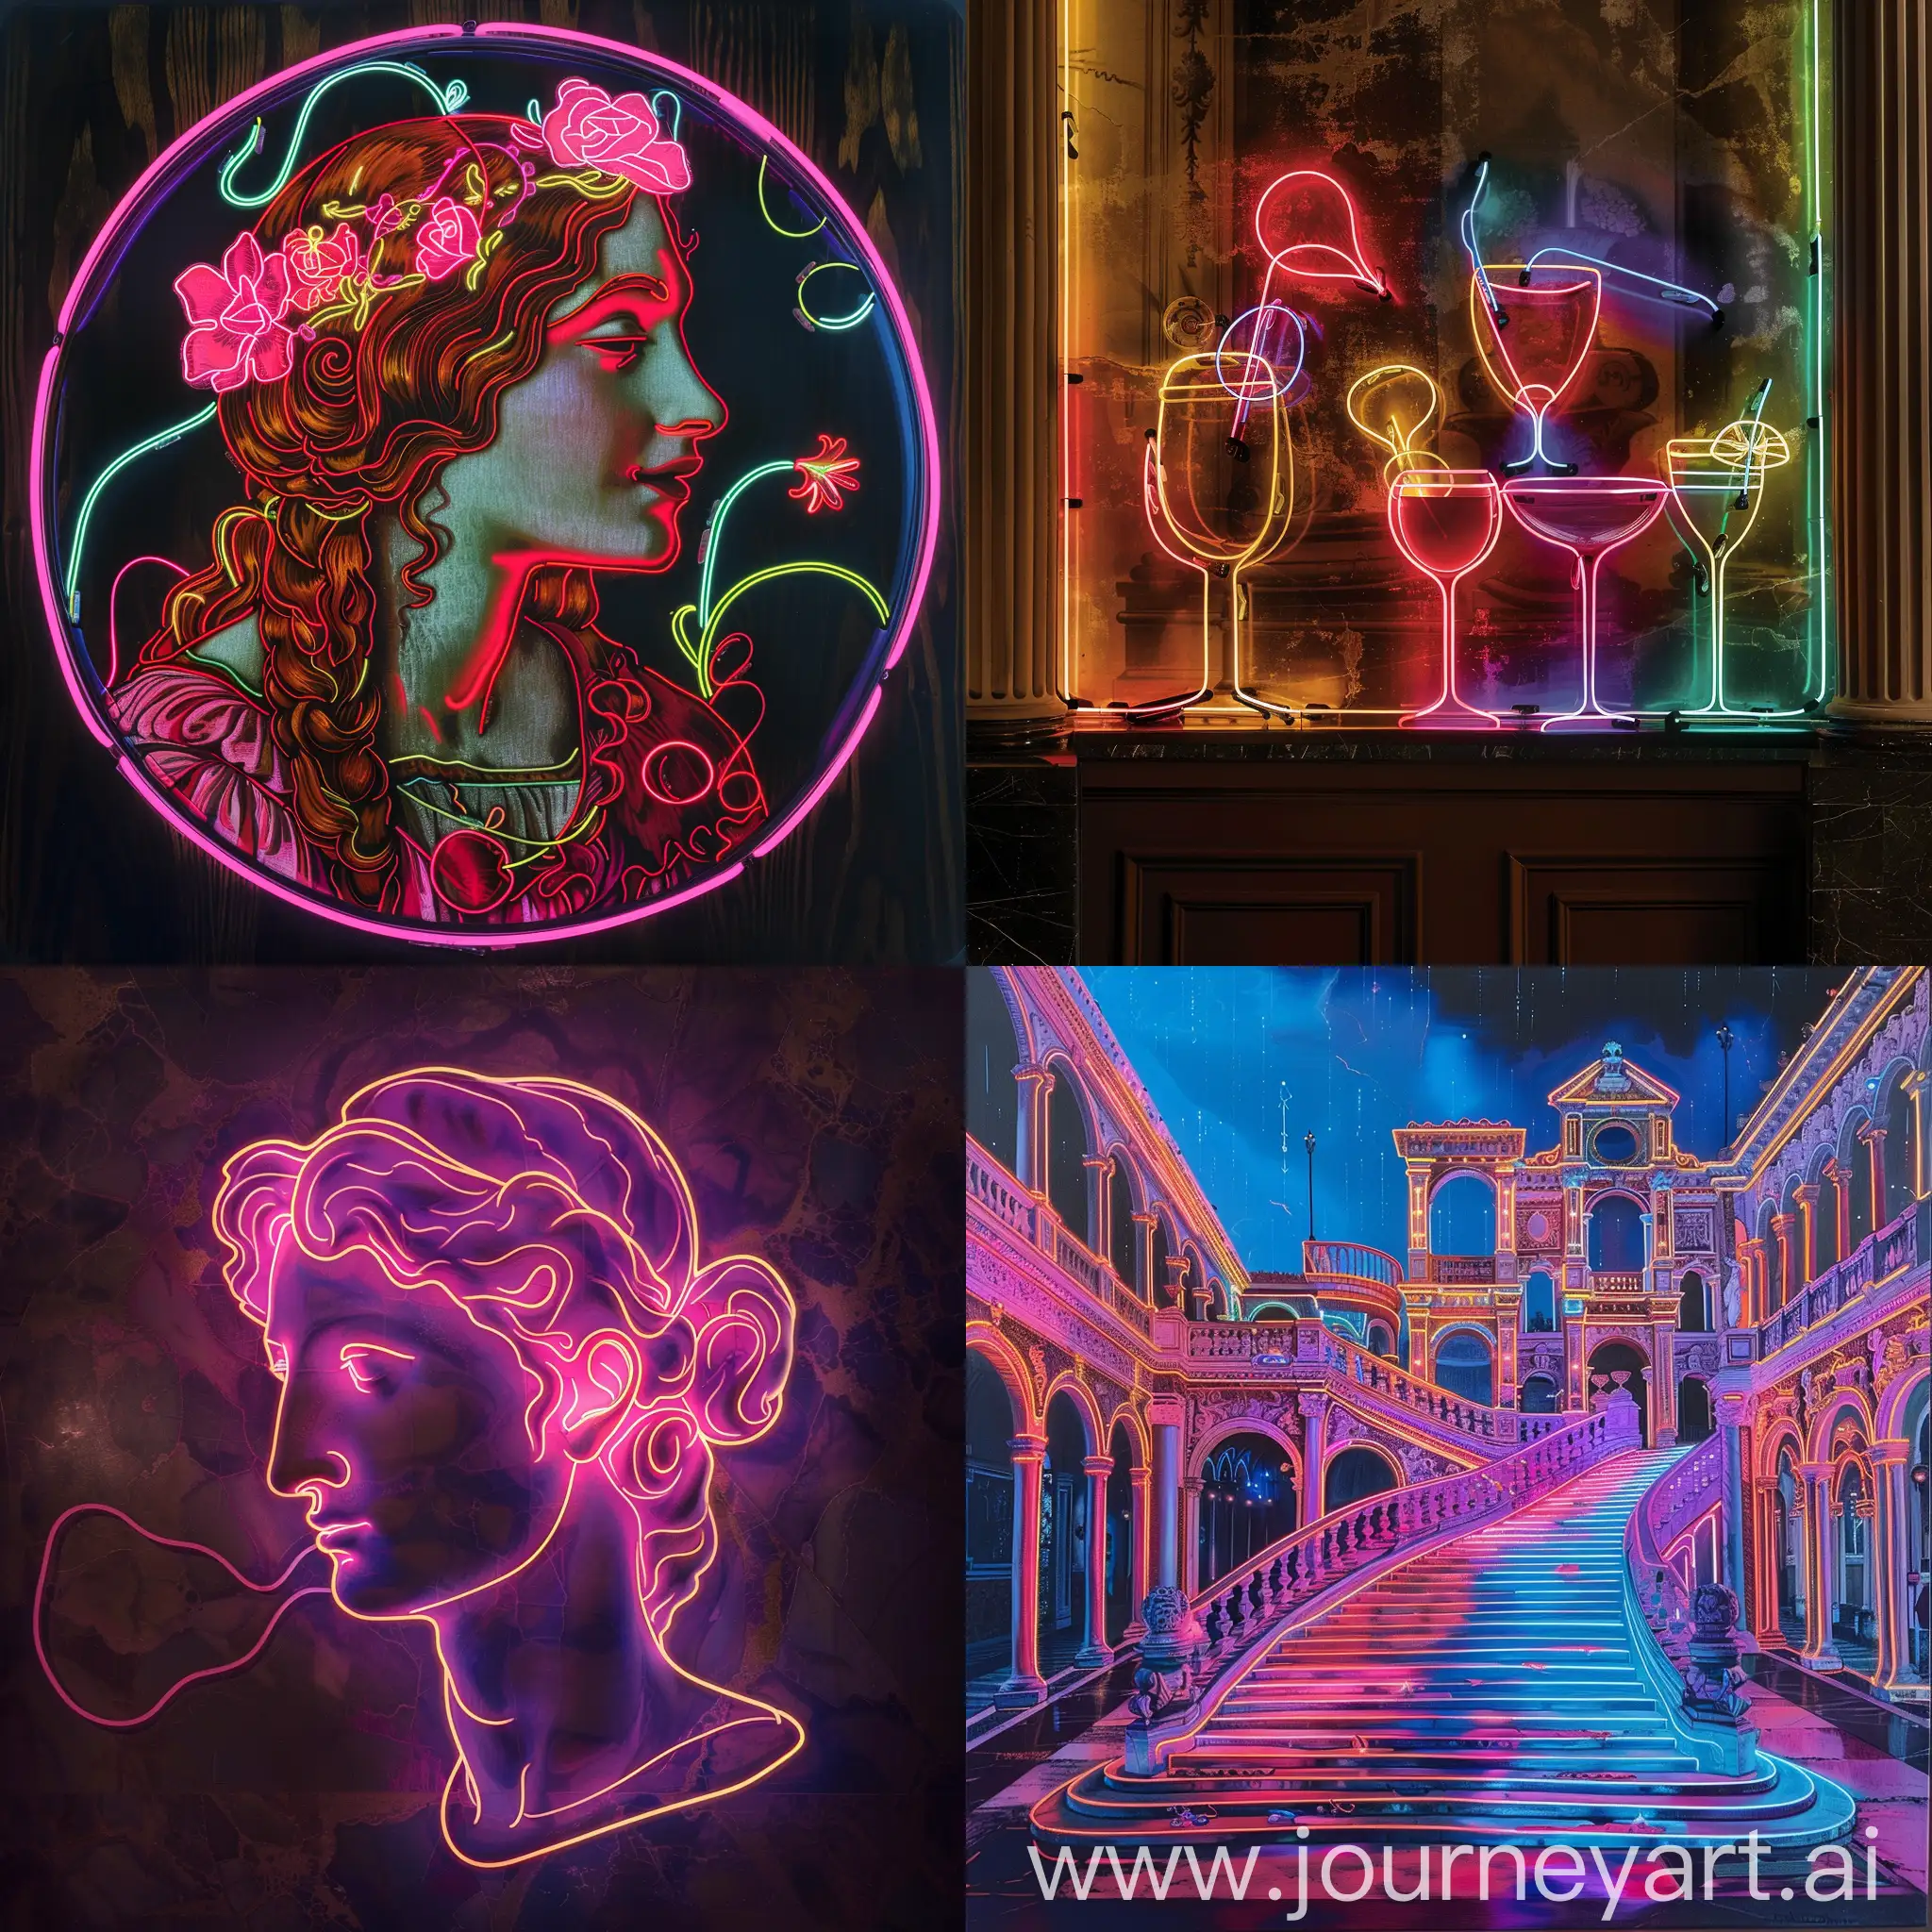 Vibrant-Neon-Portrait-by-Gentile-Bellini-Illuminated-Art-in-916-Aspect-Ratio